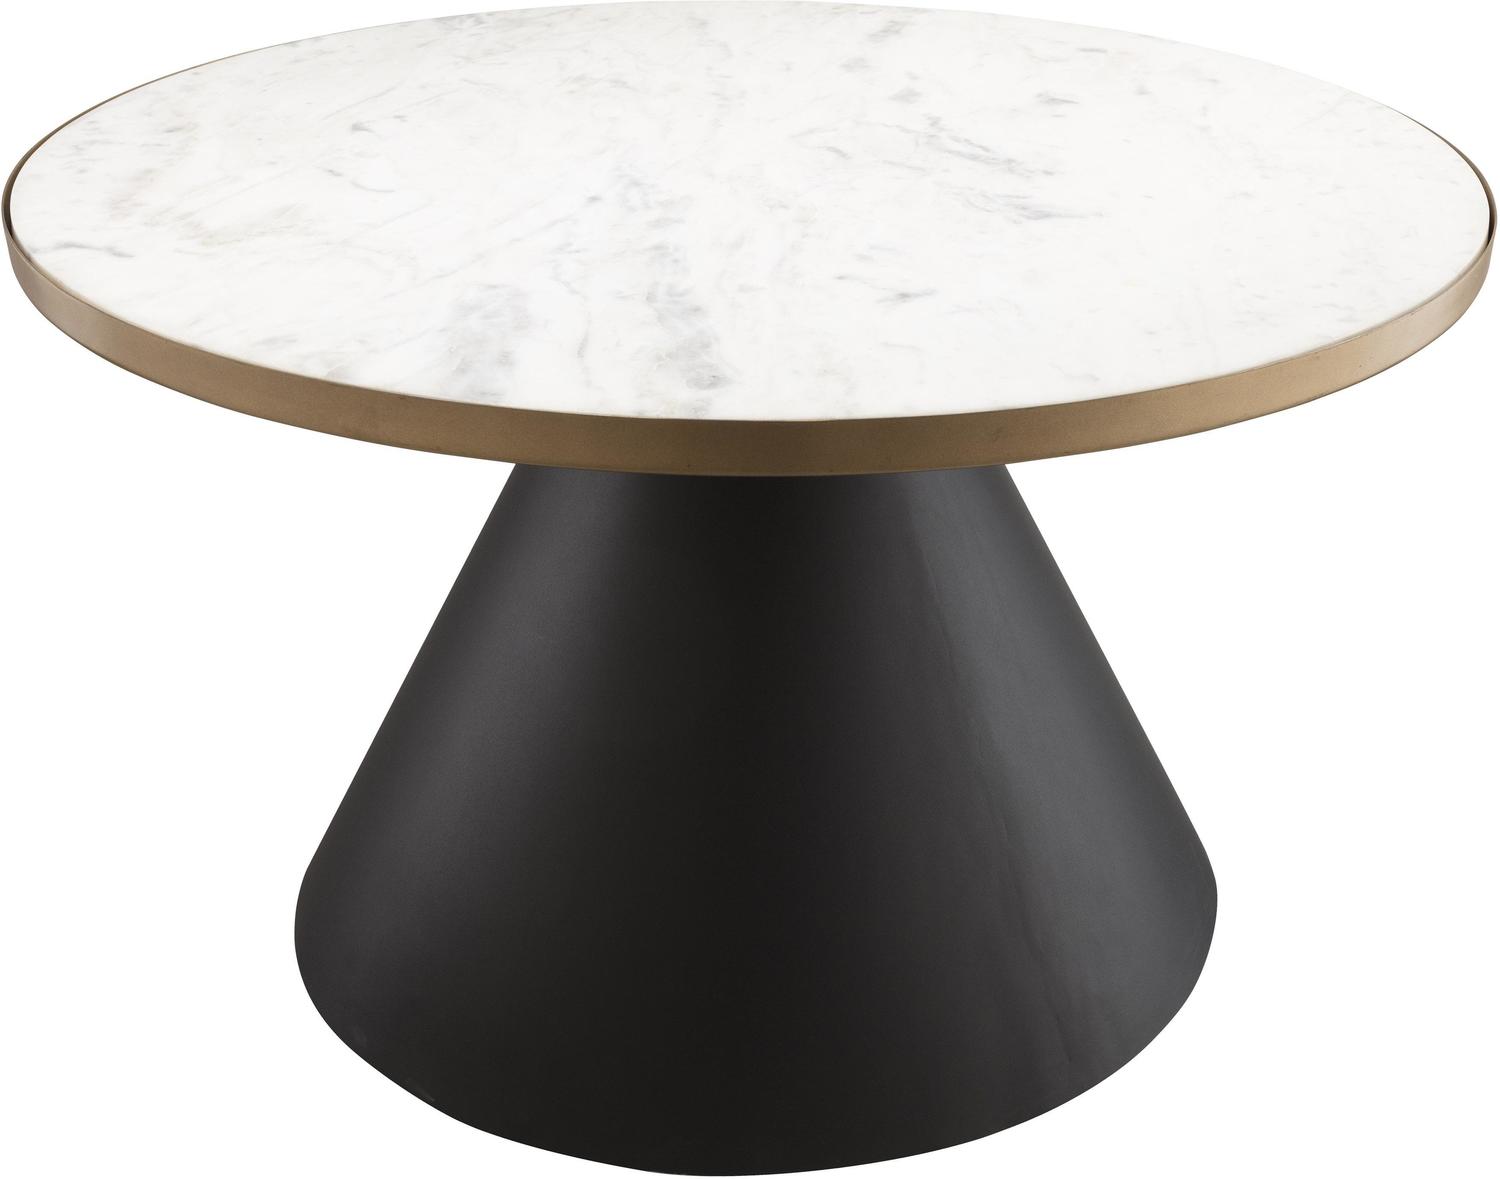 unique small side tables Contemporary Design Furniture Coffee Tables Black,White